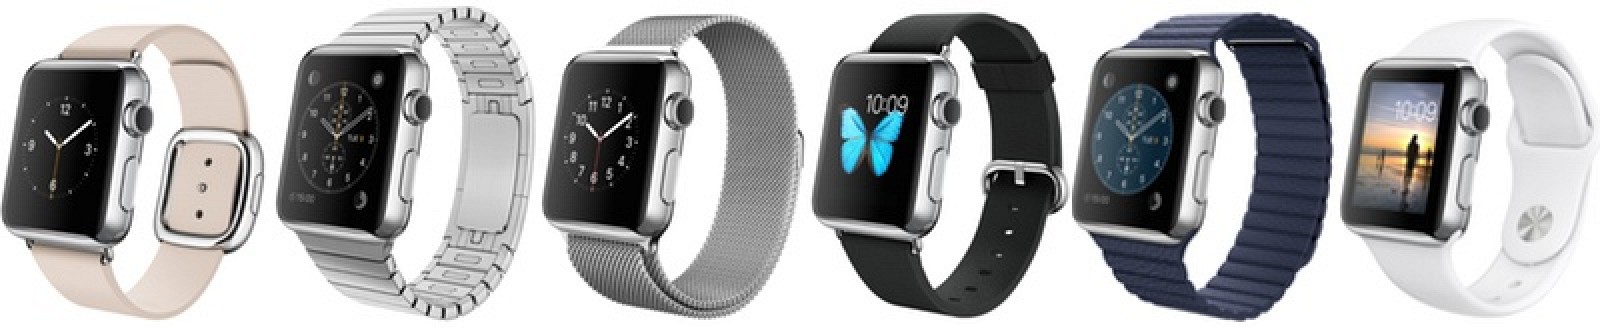 Apple Watch выйдут в продажу в апреле - 4